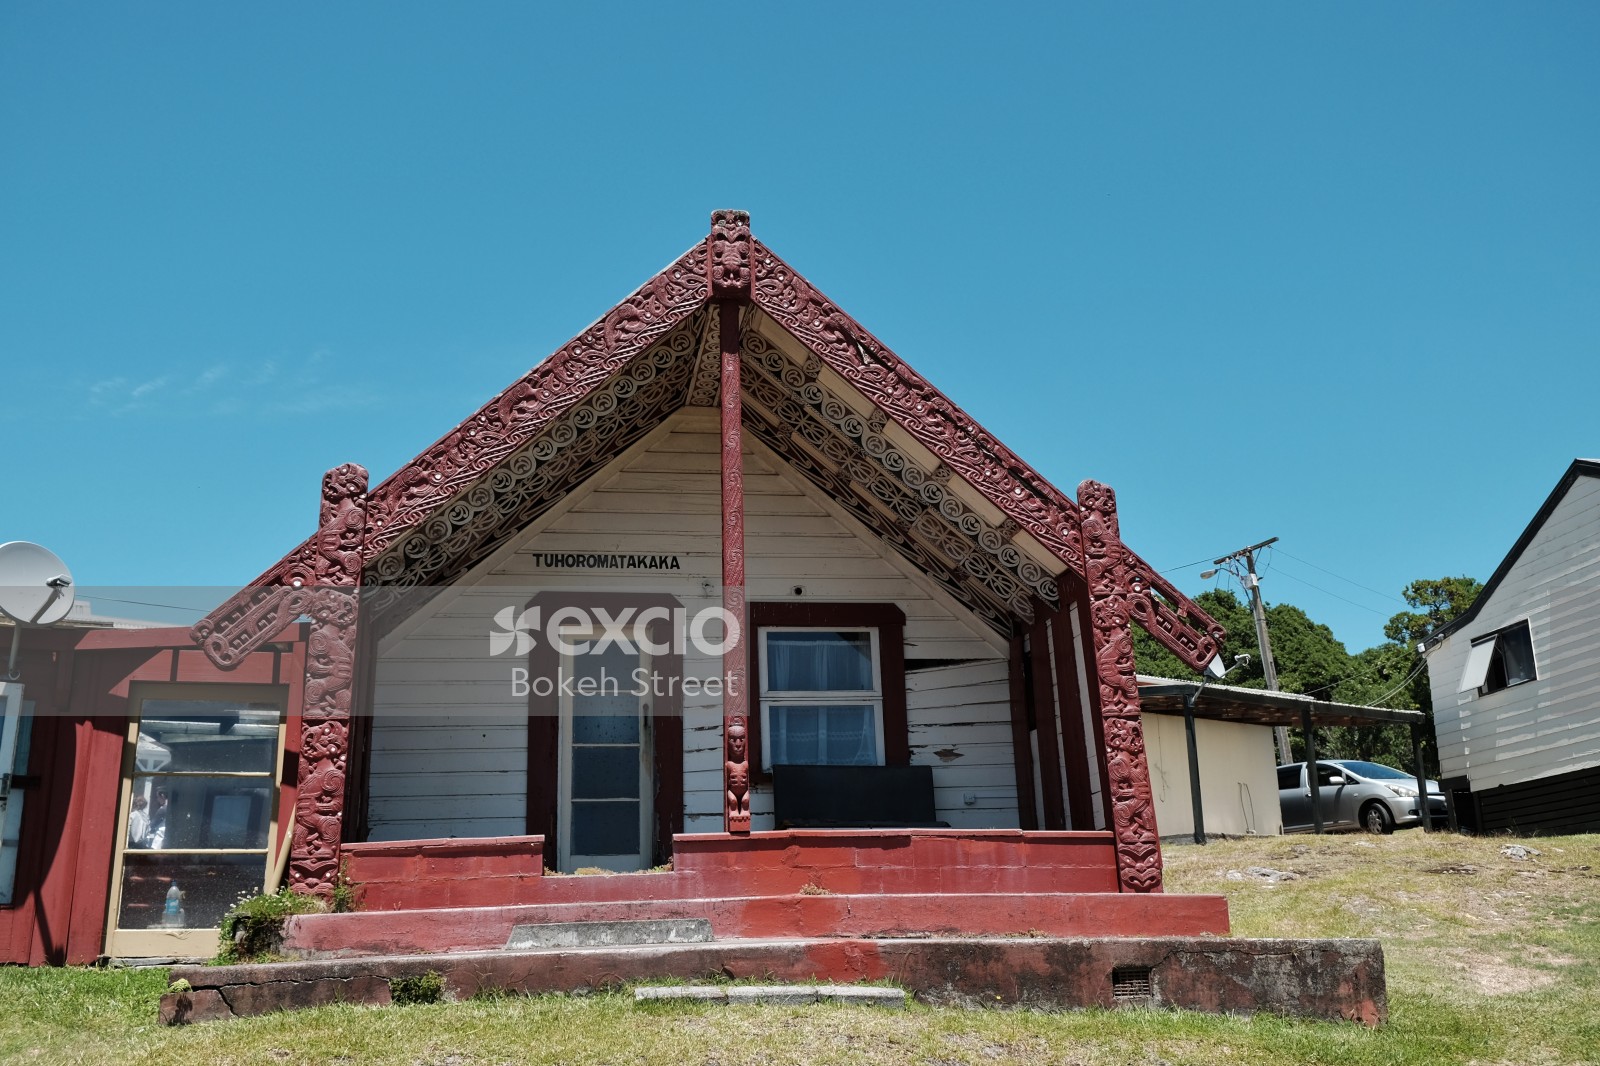 Marae and Maori architecture